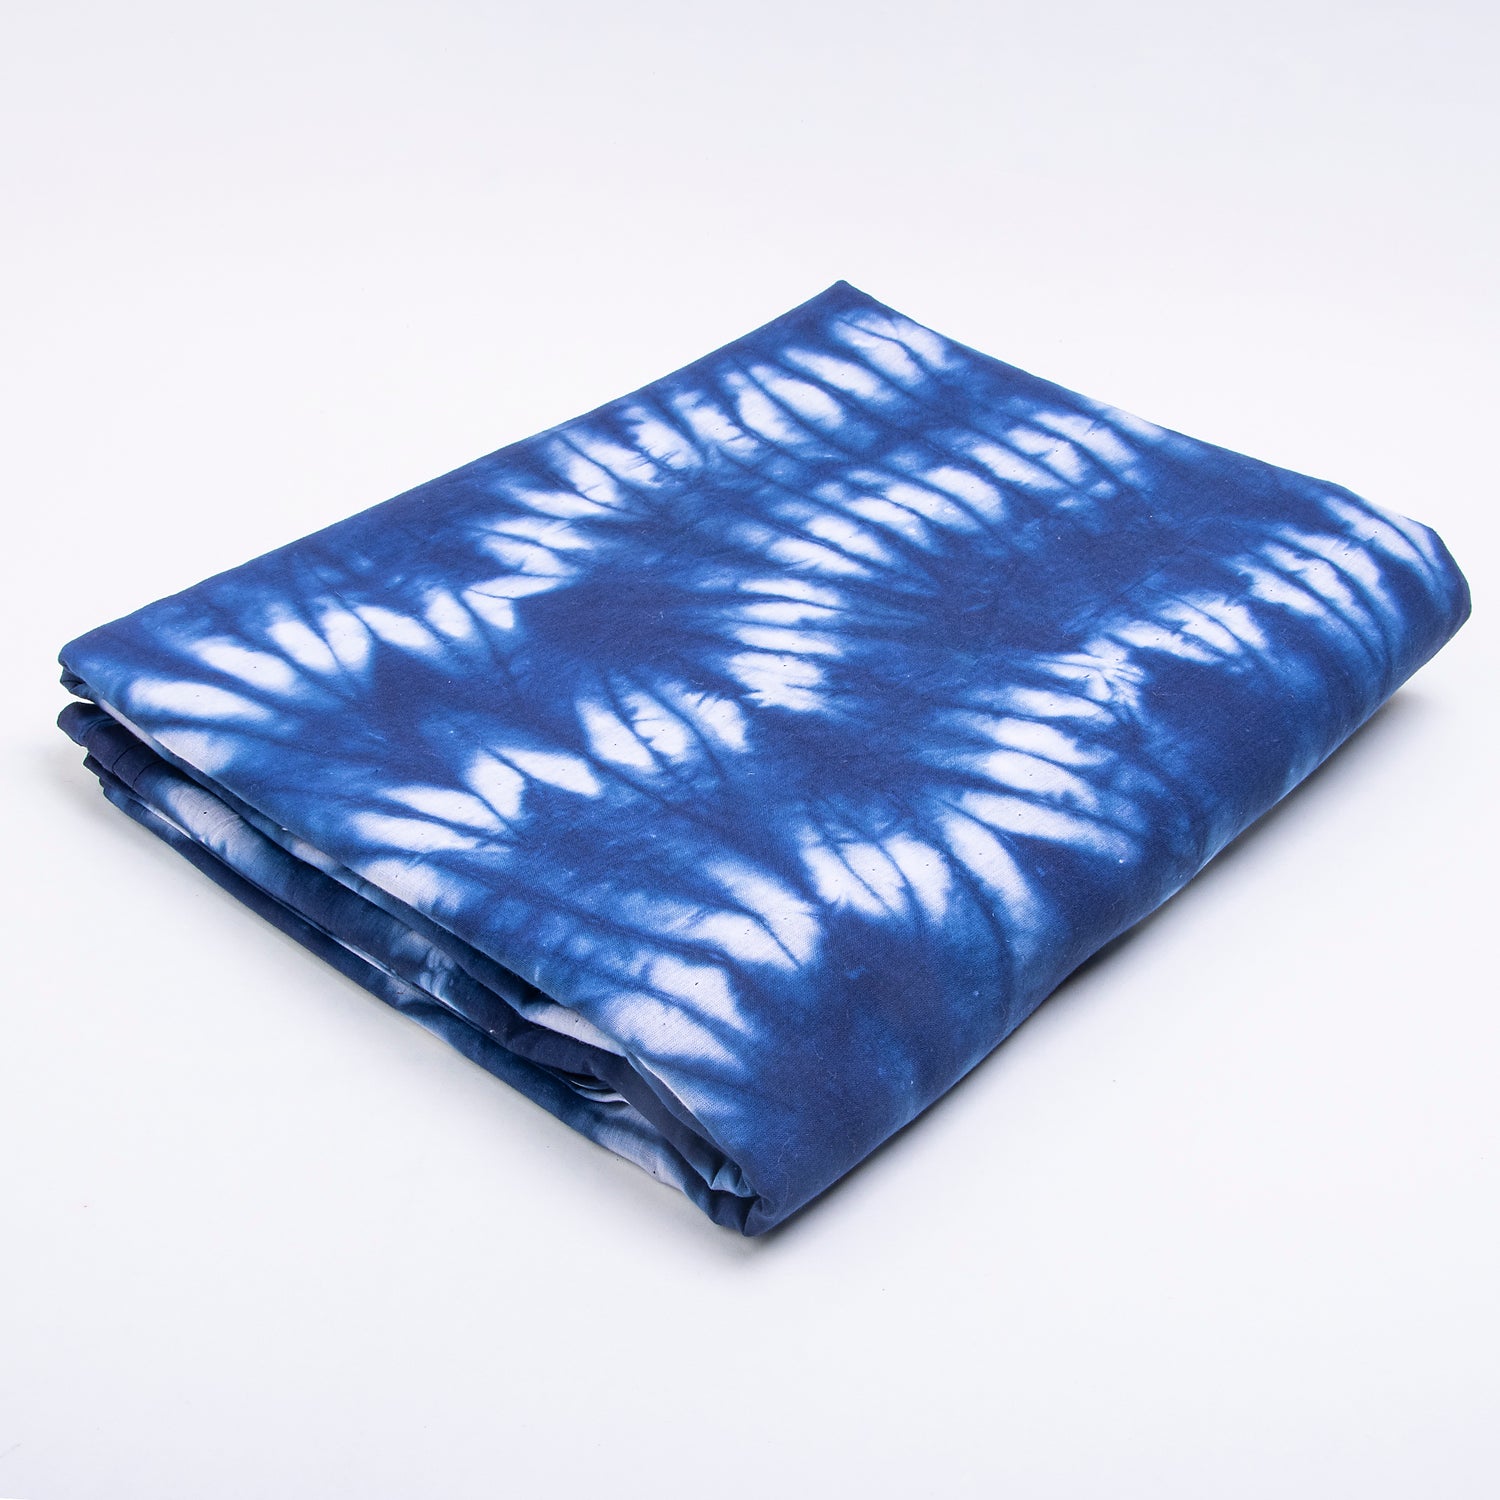 Stormy Sea Zig Zag Fabric Online , Tie Dye Cotton fabric 